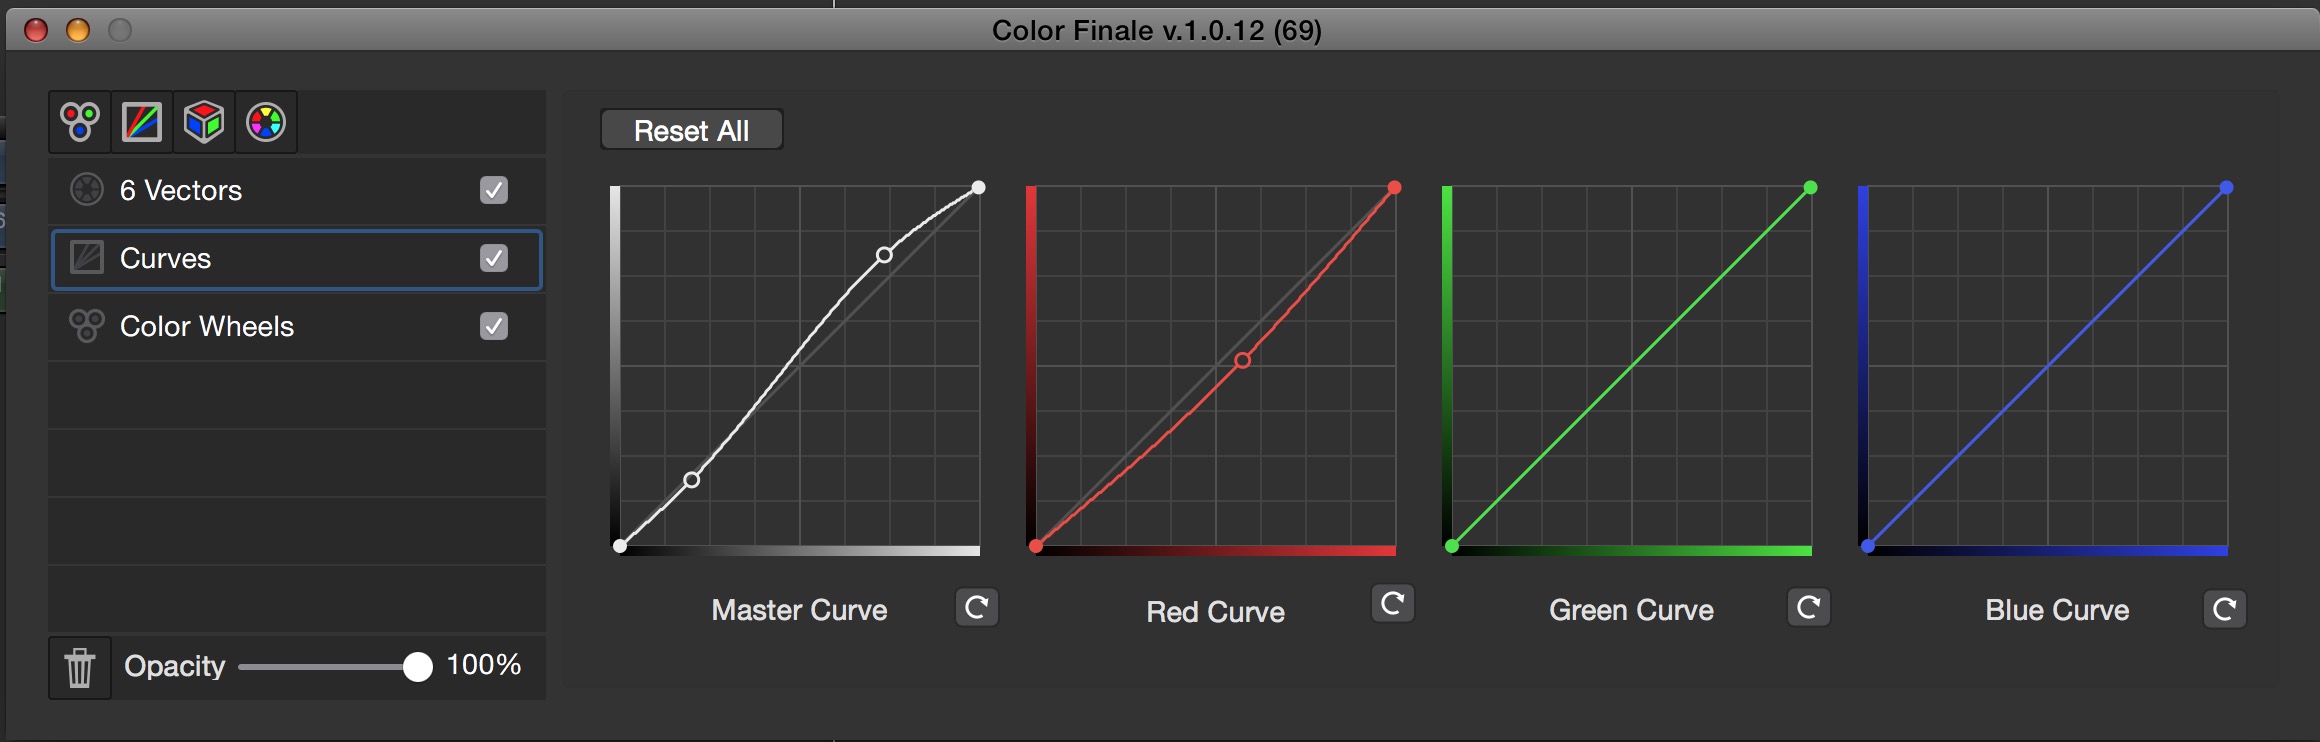 colorfinale curves